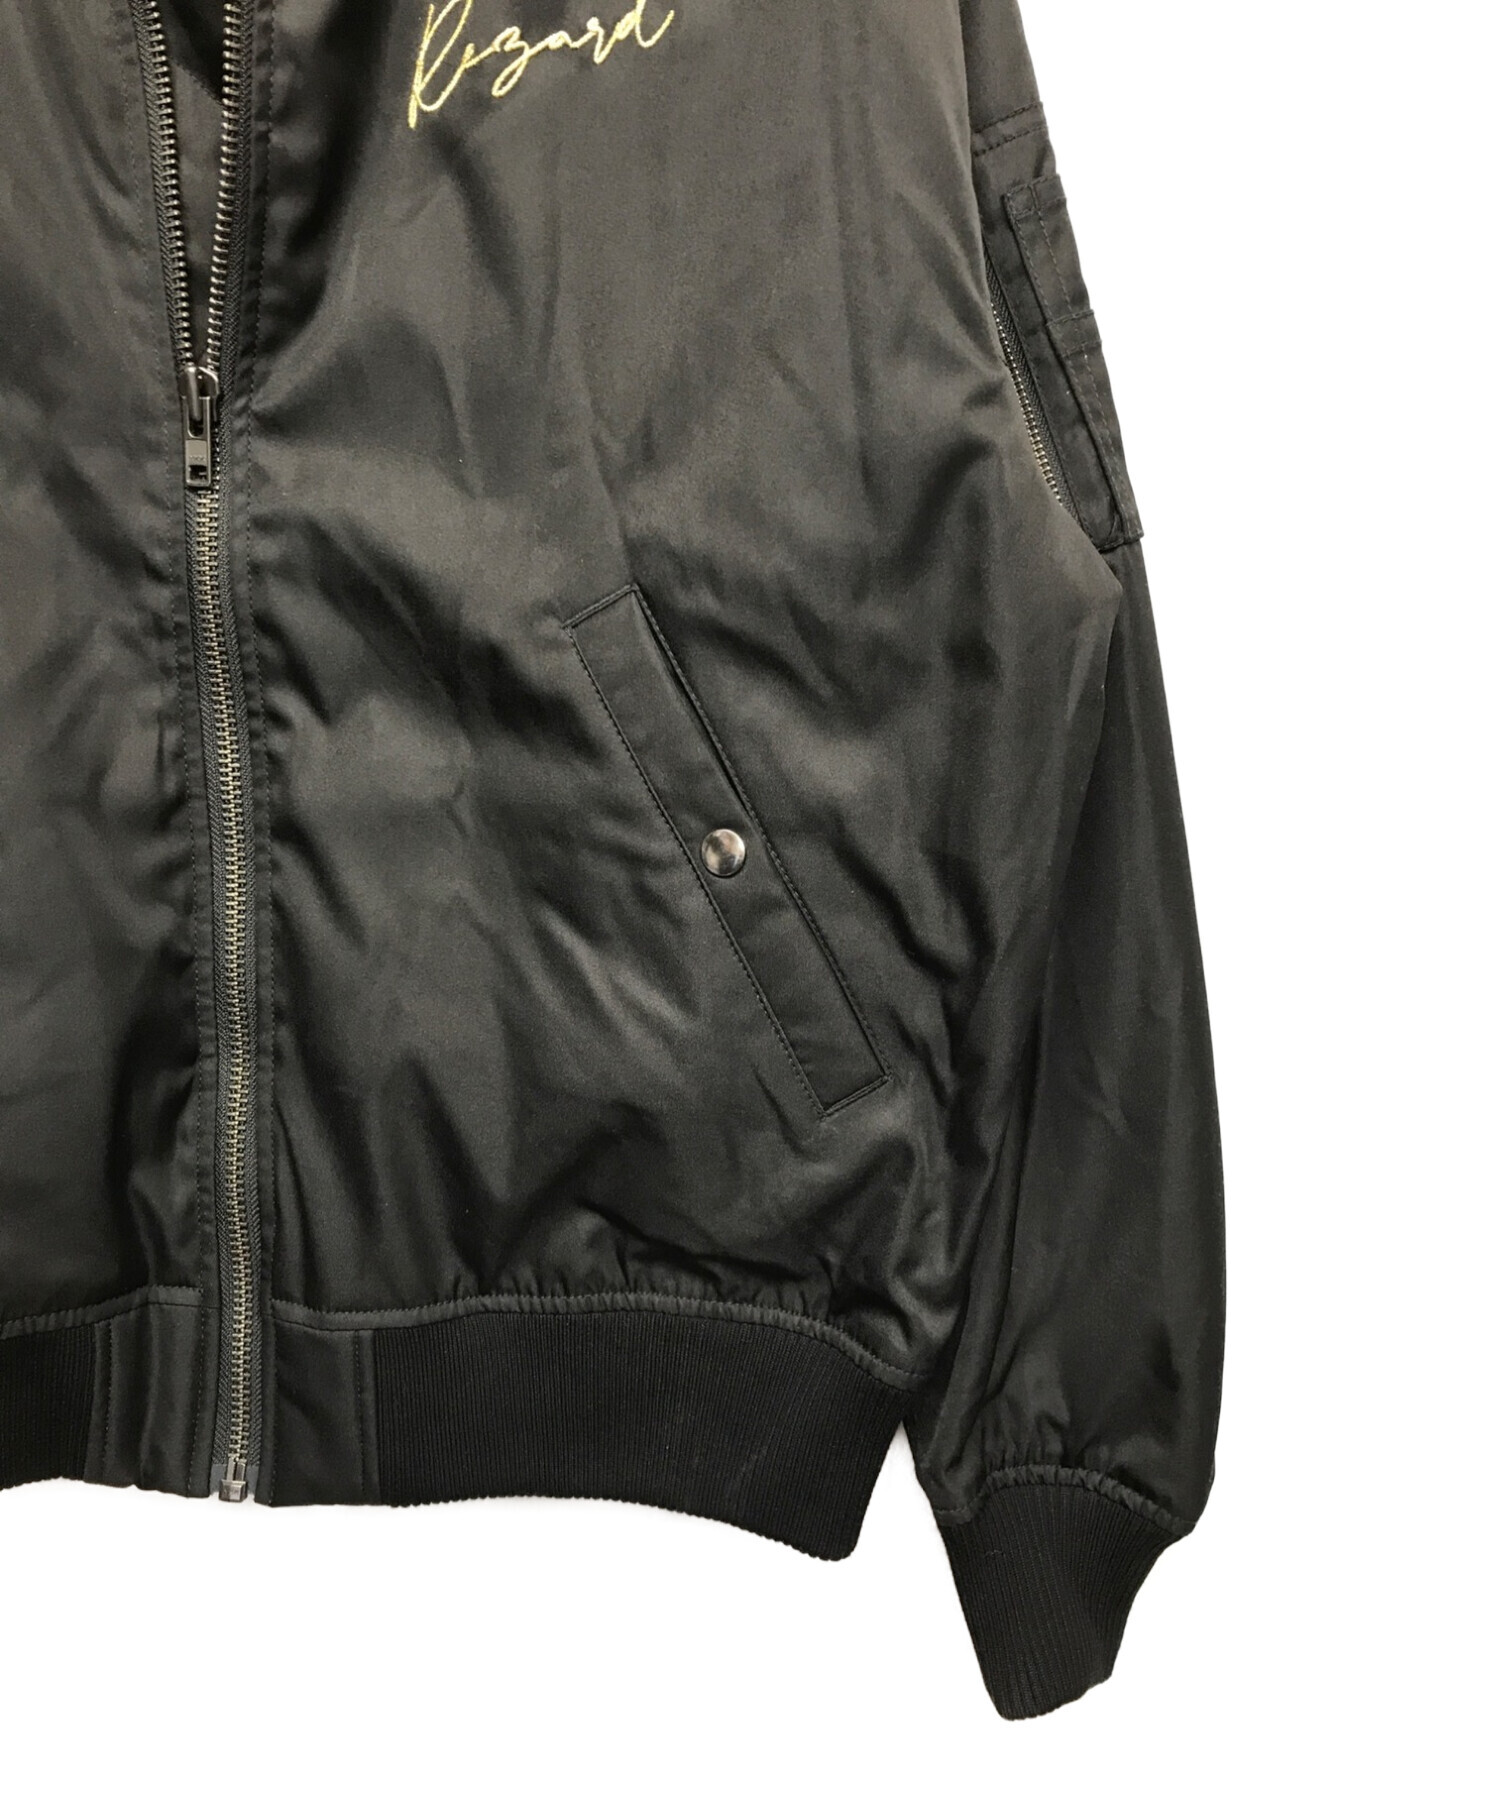 ReZARD (リザード) ロゴMA-1ジャケット ブラック サイズ:M